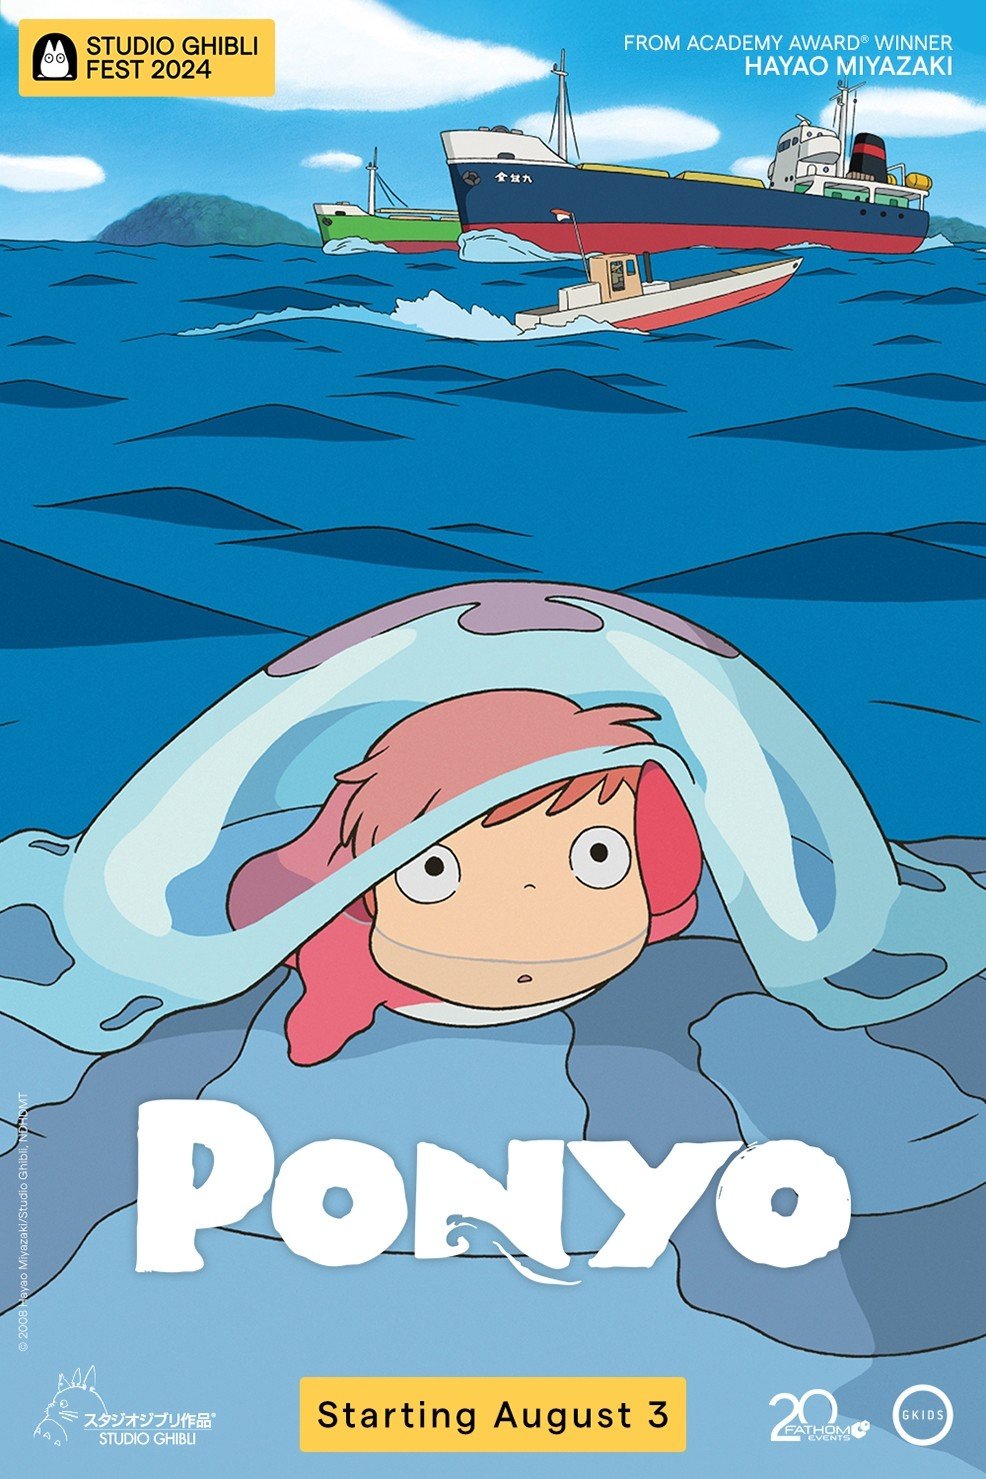 Ponyo - Studio Ghibli Fest 2024